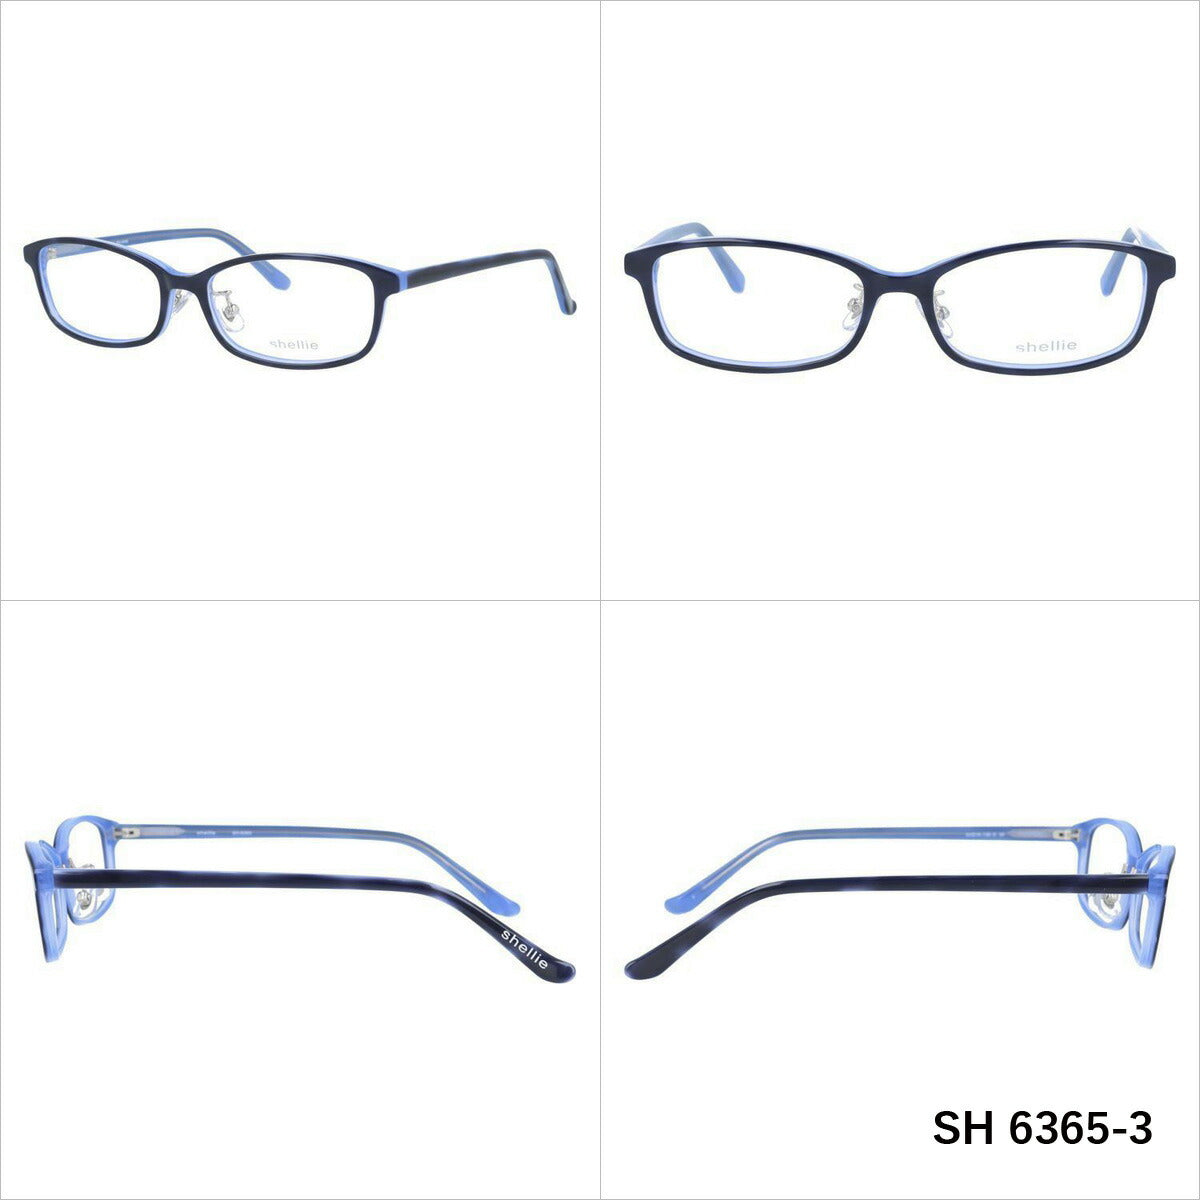 シェリー メガネ 眼鏡 フレーム 度付き 伊達 カラーレンズ メンズ レディース shellie ブランド SH 6365 53 スクエア | 老眼鏡 PCレンズ ブルーライトカット 遠近両用 対応可能 紫外線 対策 おすすめ 人気 プレゼント